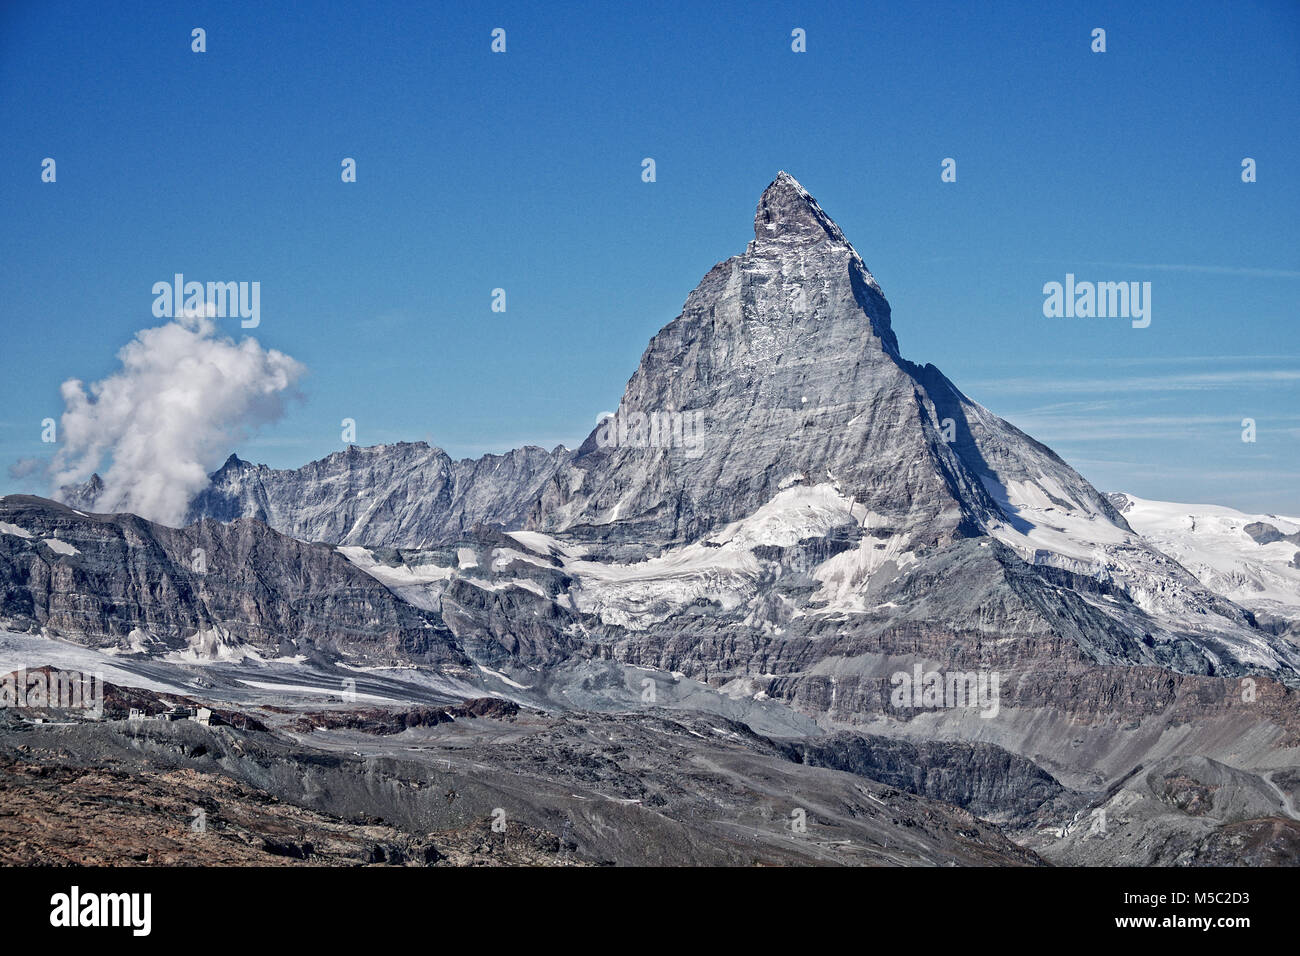 Le mont cervin sur une journée ensoleillée est haut au-dessus les Alpes environnantes. Les champs de glace et les glaciers ont beaucoup diminué en taille. Banque D'Images